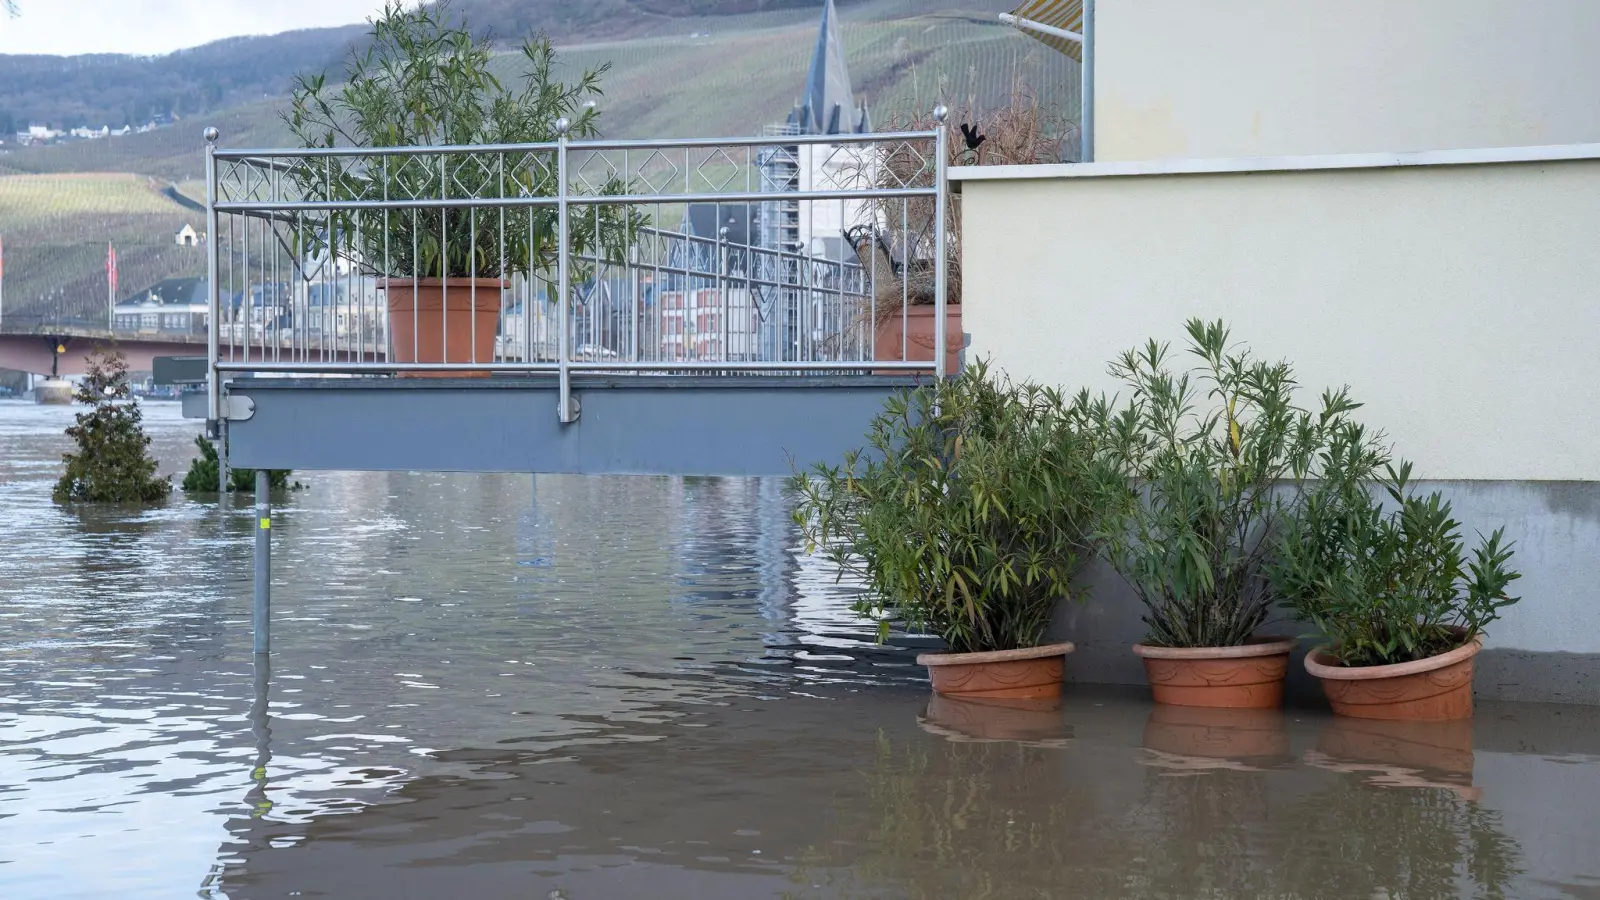 Starkregen kann zu schweren Überflutungen führen. (Foto: Florian Schuh/dpa-tmn)